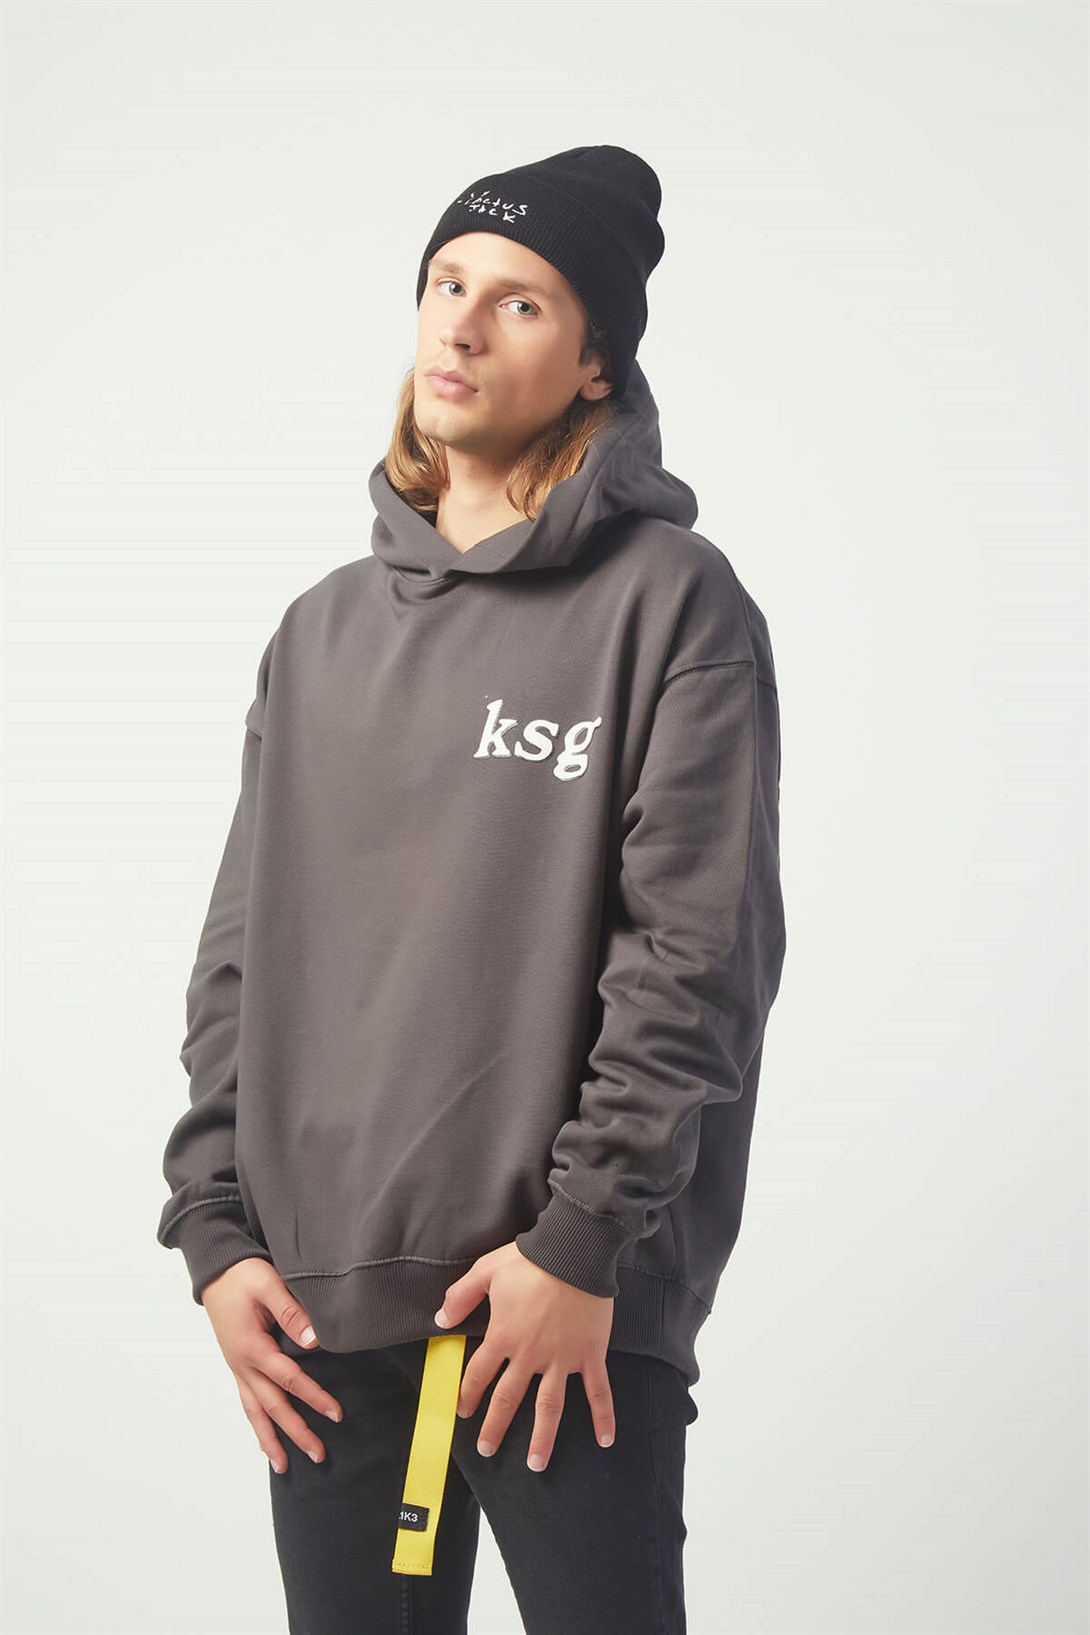 Trendiz Ksg Oversıze Sweatshirt Koyugrı TR30022